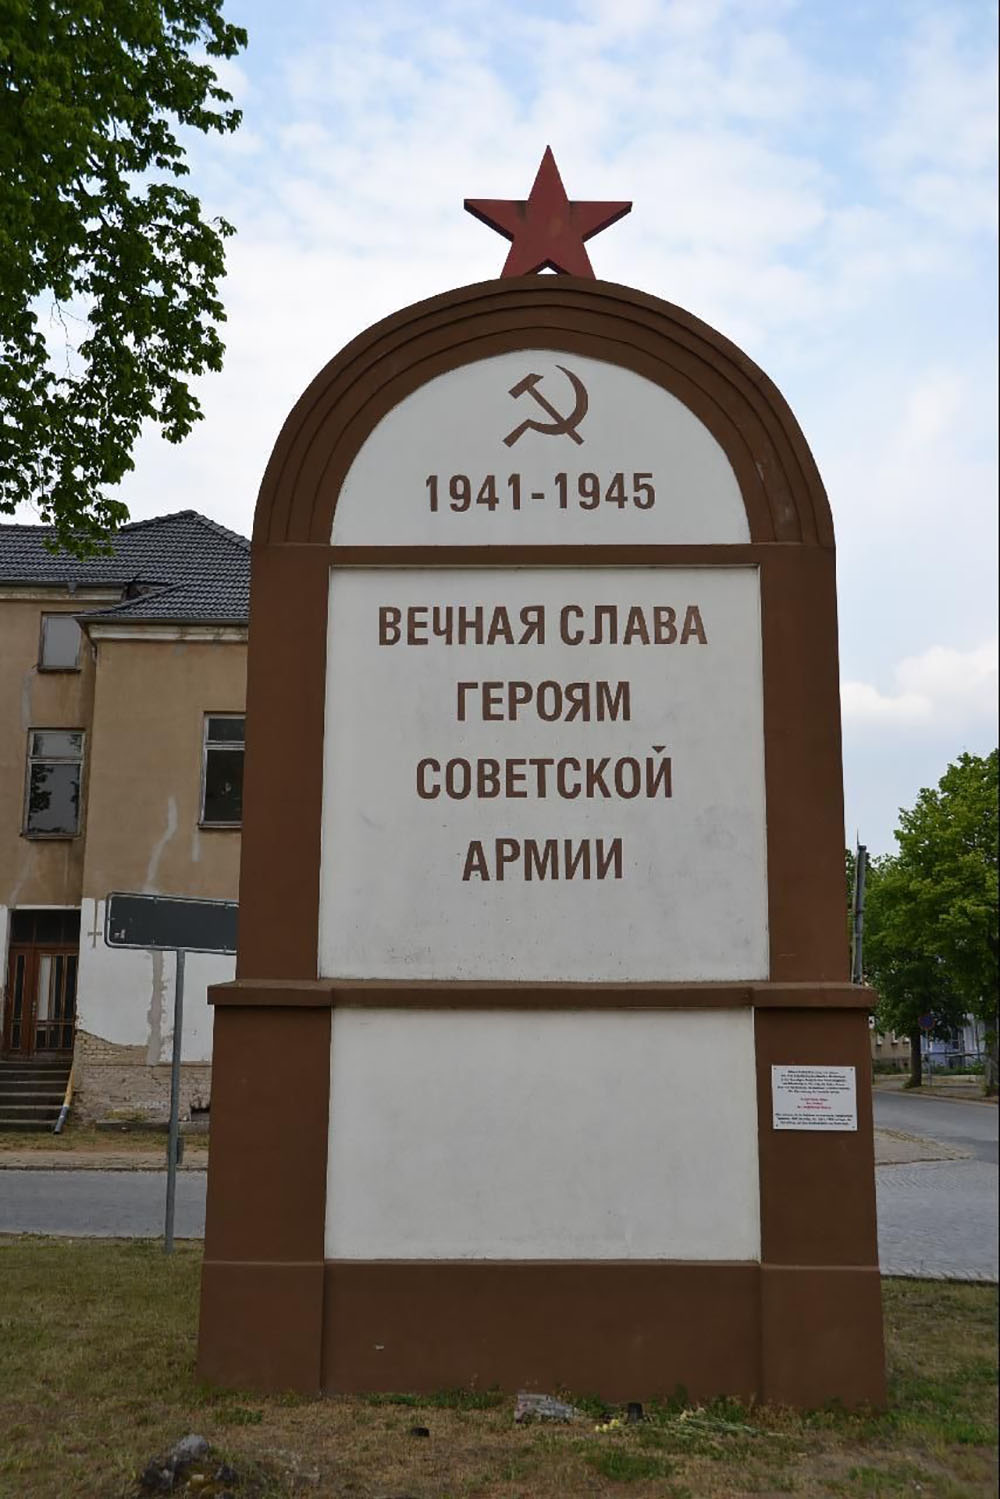 Russian War Memorial (former war cemetery)